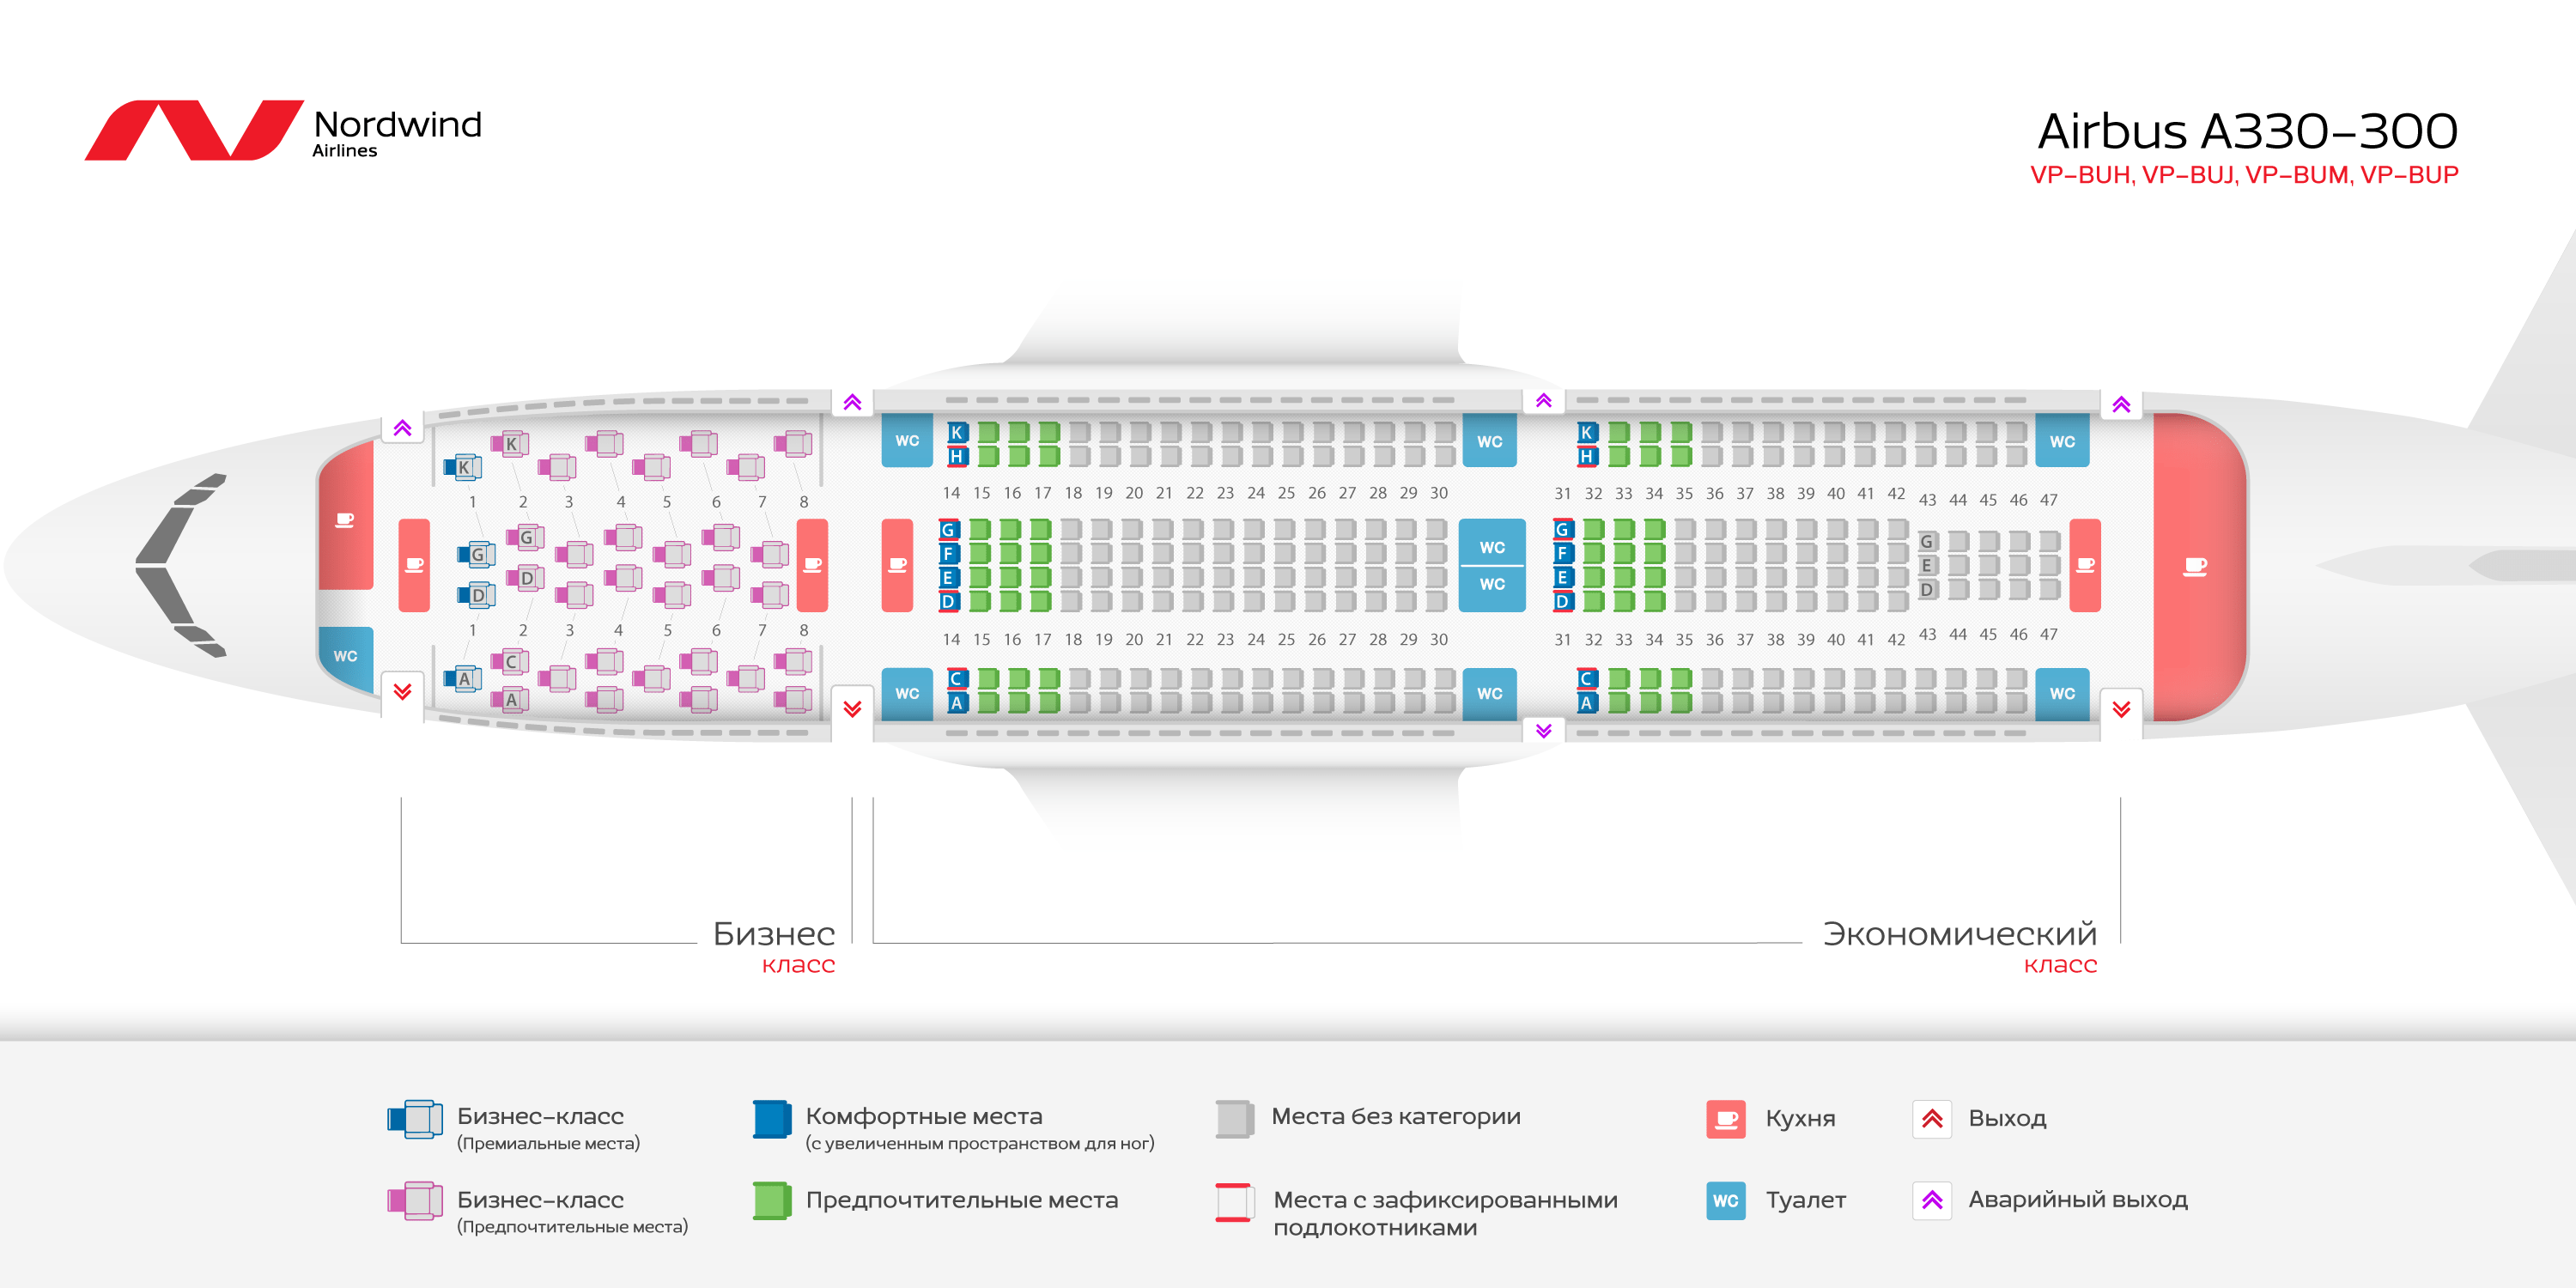 Airbus a330-300: лучшие места в салоне, схема рядов